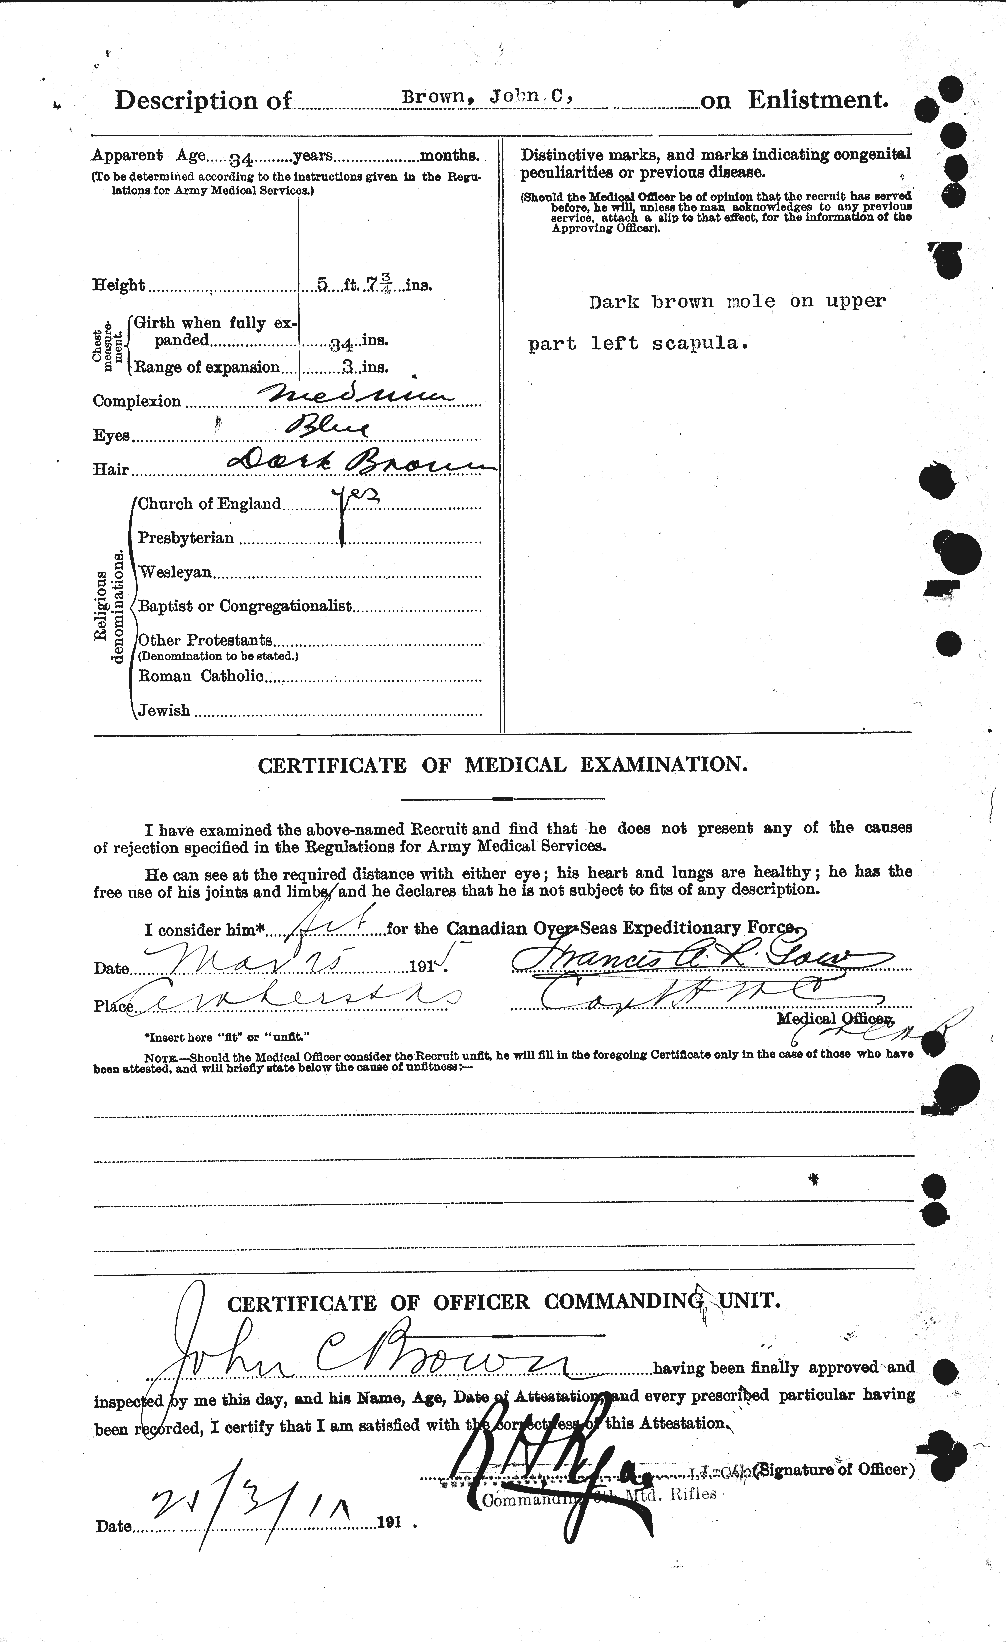 Dossiers du Personnel de la Première Guerre mondiale - CEC 264581b